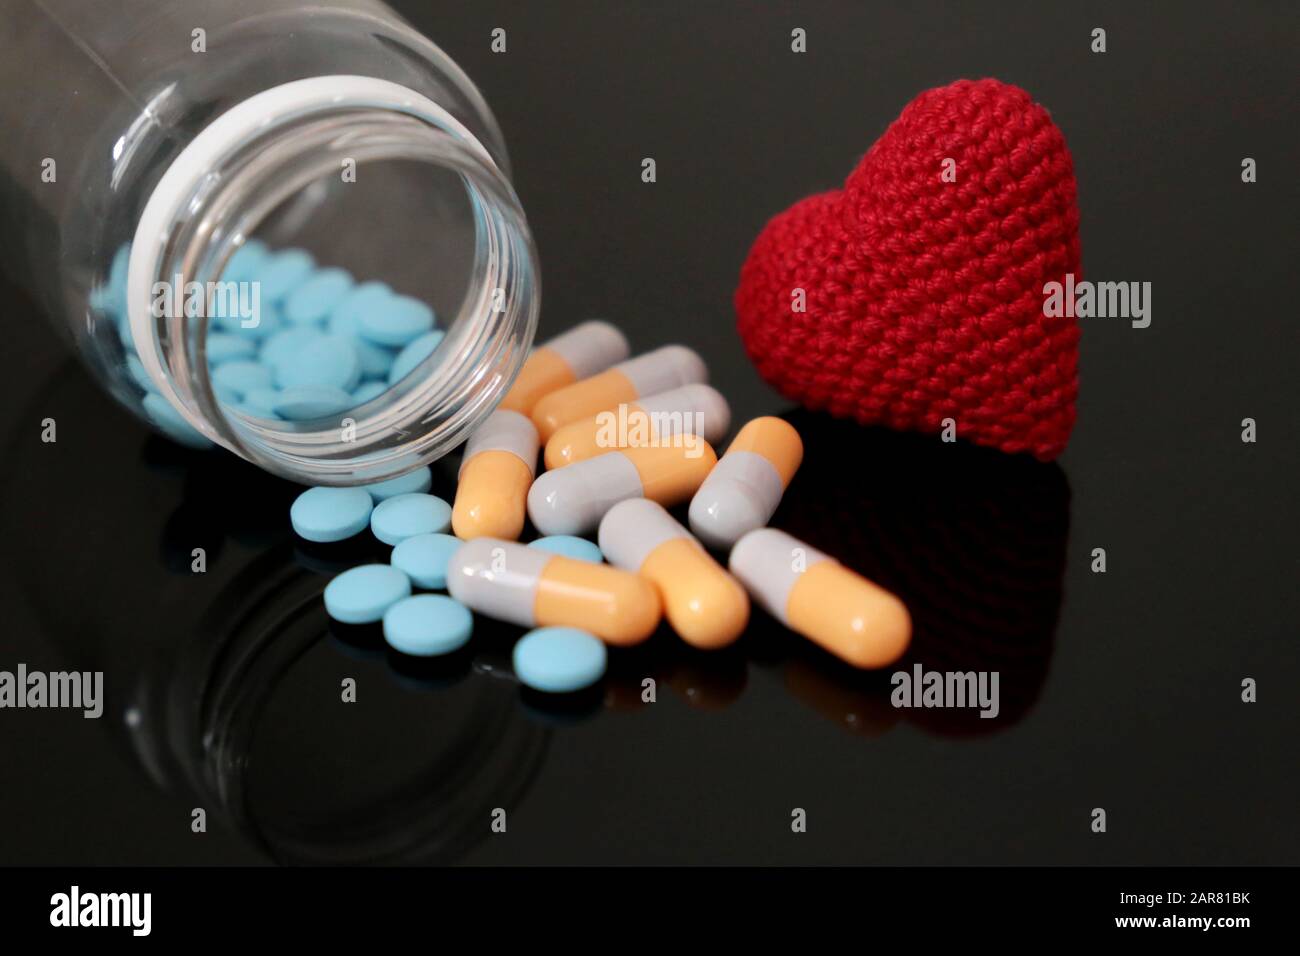 Pilules et coeur rouge tricoté sur table en verre foncé, bouteille avec médicament en capsules. Concept d'hypertension, de maladie cardiaque, de cardiologie, d'examen préliminaire sanguin Banque D'Images